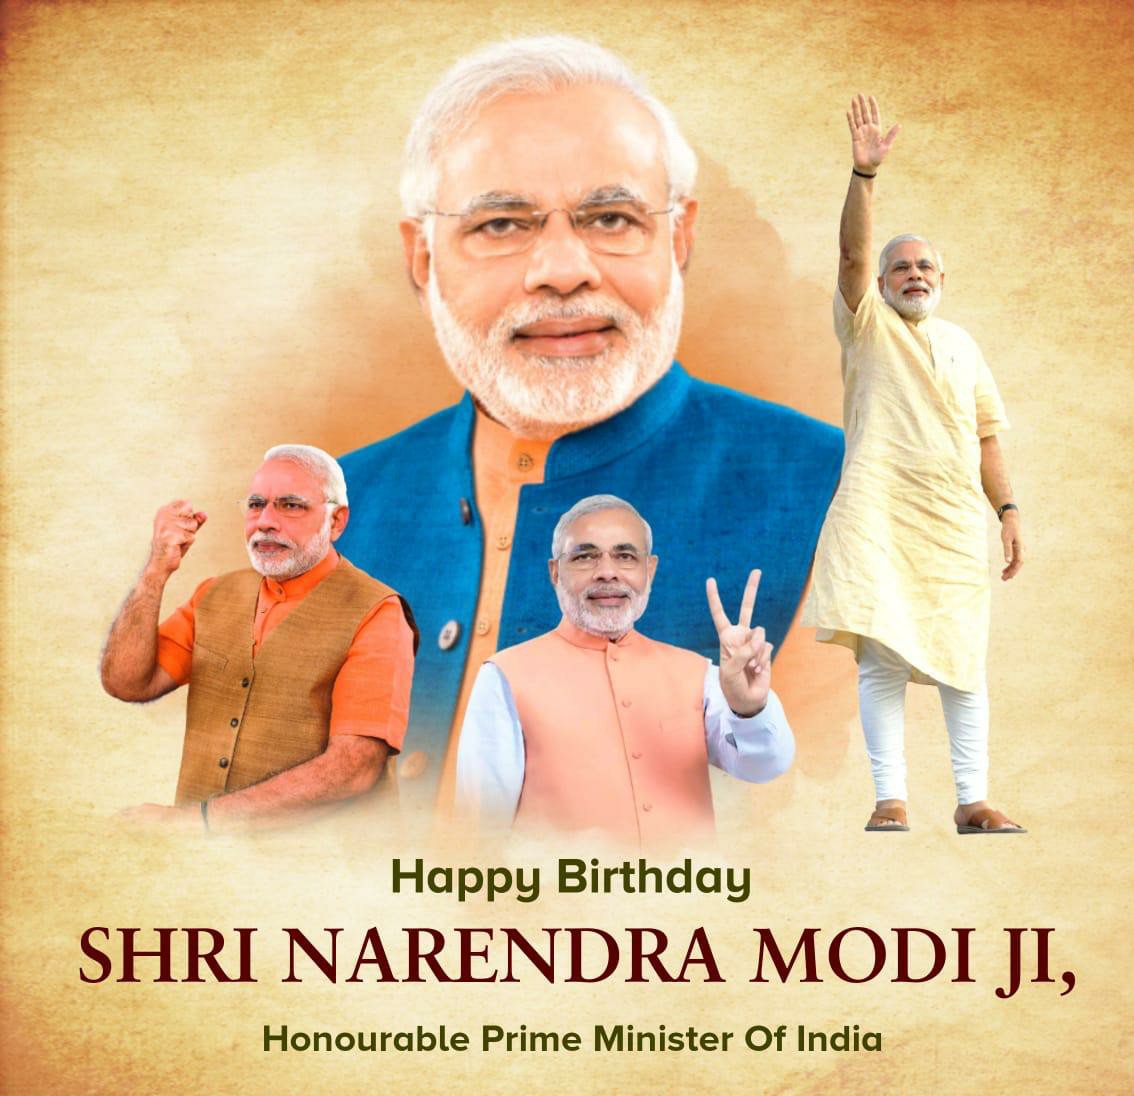 سالگرہ مبارک ہو نریندر مودی: ڈاؤن لوڈ کرنے کے لیے ان نیک خواہشات، اقتباسات، مبارکباد، پوسٹرز، بینرز، اور واٹس ایپ اسٹیٹس ویڈیو کا استعمال کرتے ہوئے ہندوستانی وزیر اعظم کو سلام کریں۔